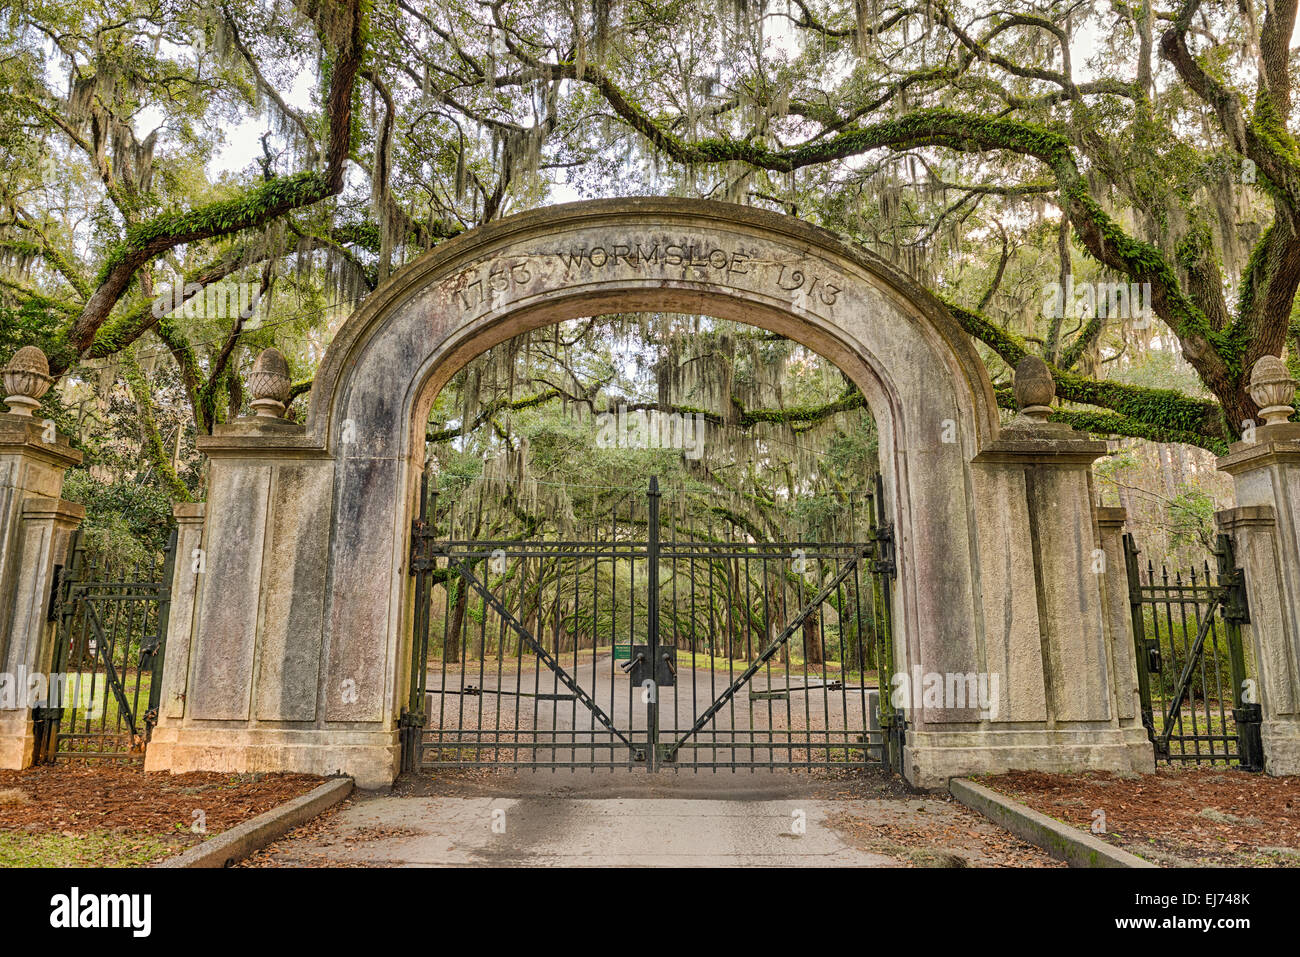 Le portail d'entrée à Plantation Wormsloe Site historique près de Savannah, Géorgie. Traitement HDR. Banque D'Images